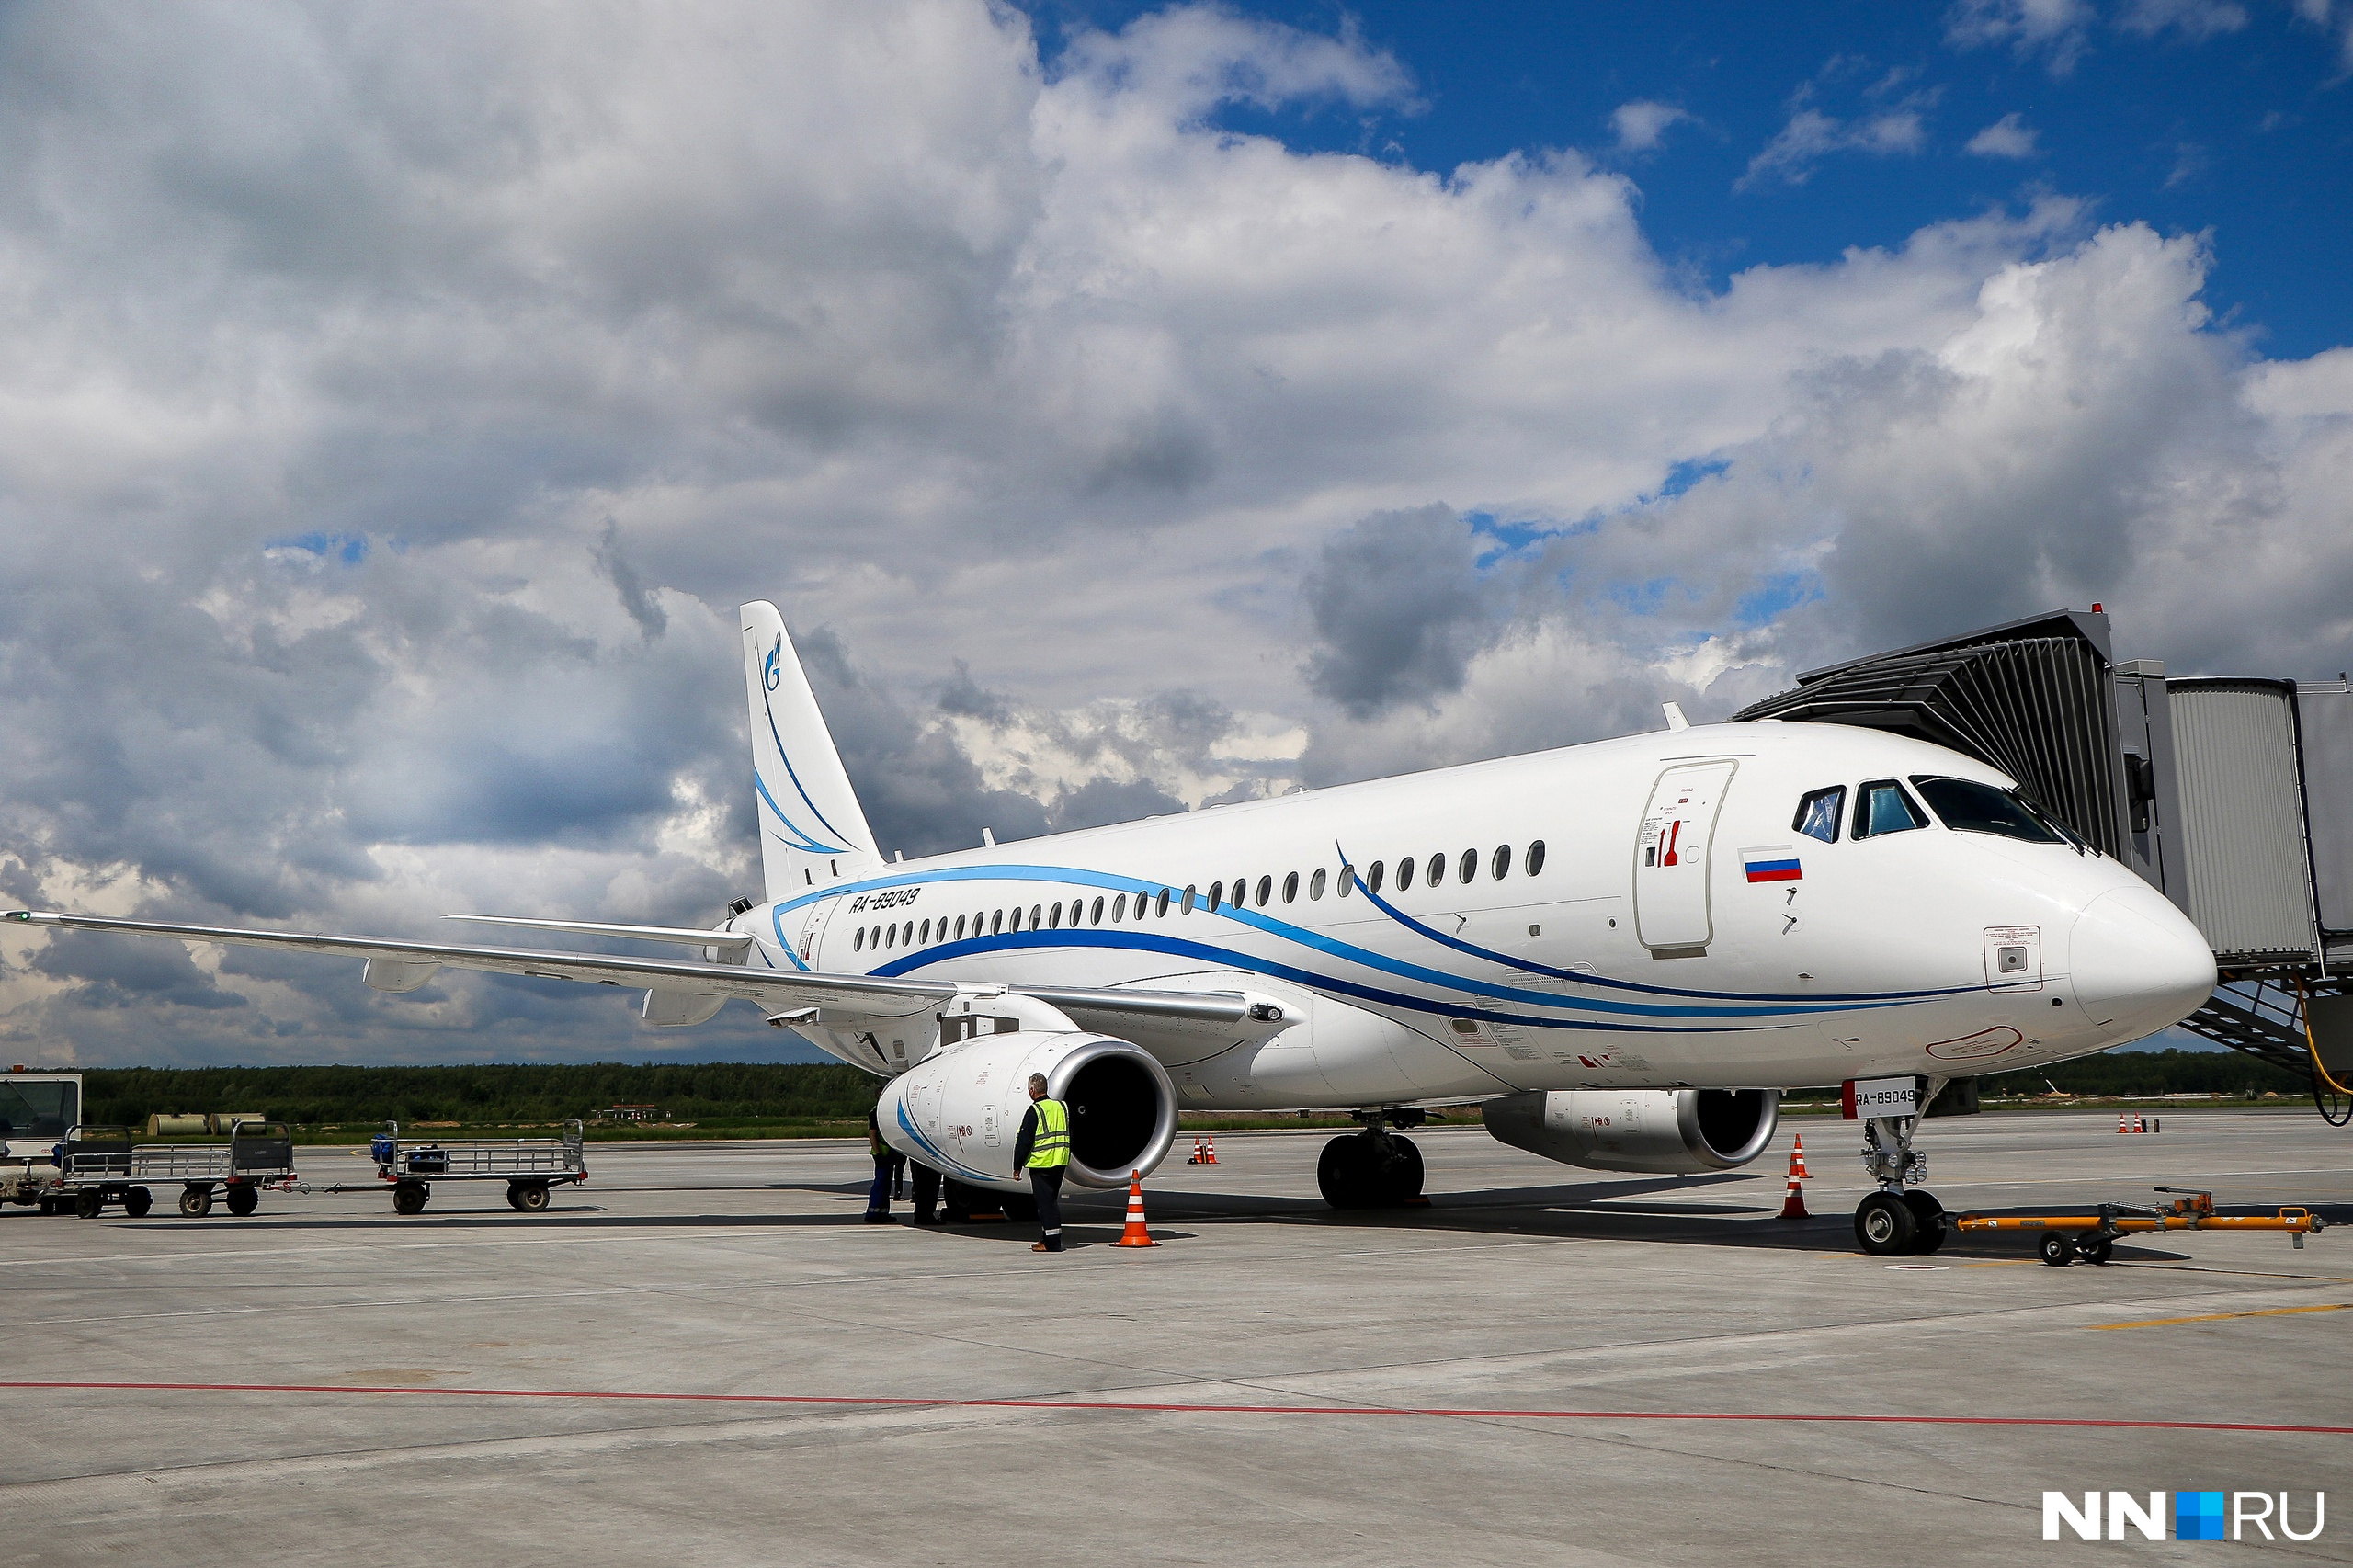 Аэропорт Нижнего Новгорода закрыт из-за угрозы атаки БПЛА. Самолеты развернули на запасные аэродромы